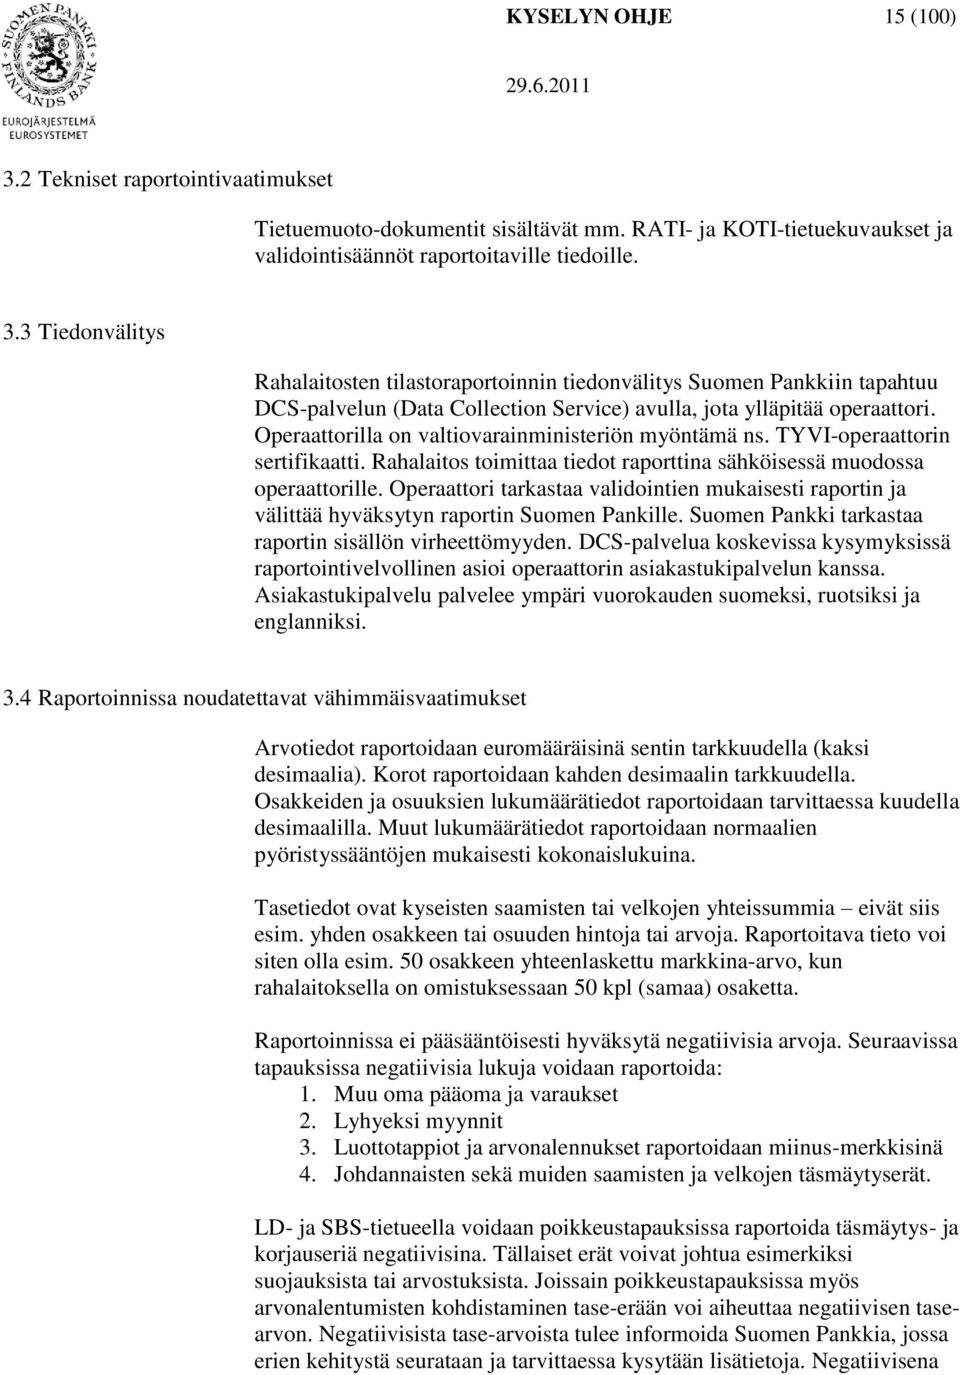 Operaattori tarkastaa validointien mukaisesti raportin ja välittää hyväksytyn raportin Suomen Pankille. Suomen Pankki tarkastaa raportin sisällön virheettömyyden.